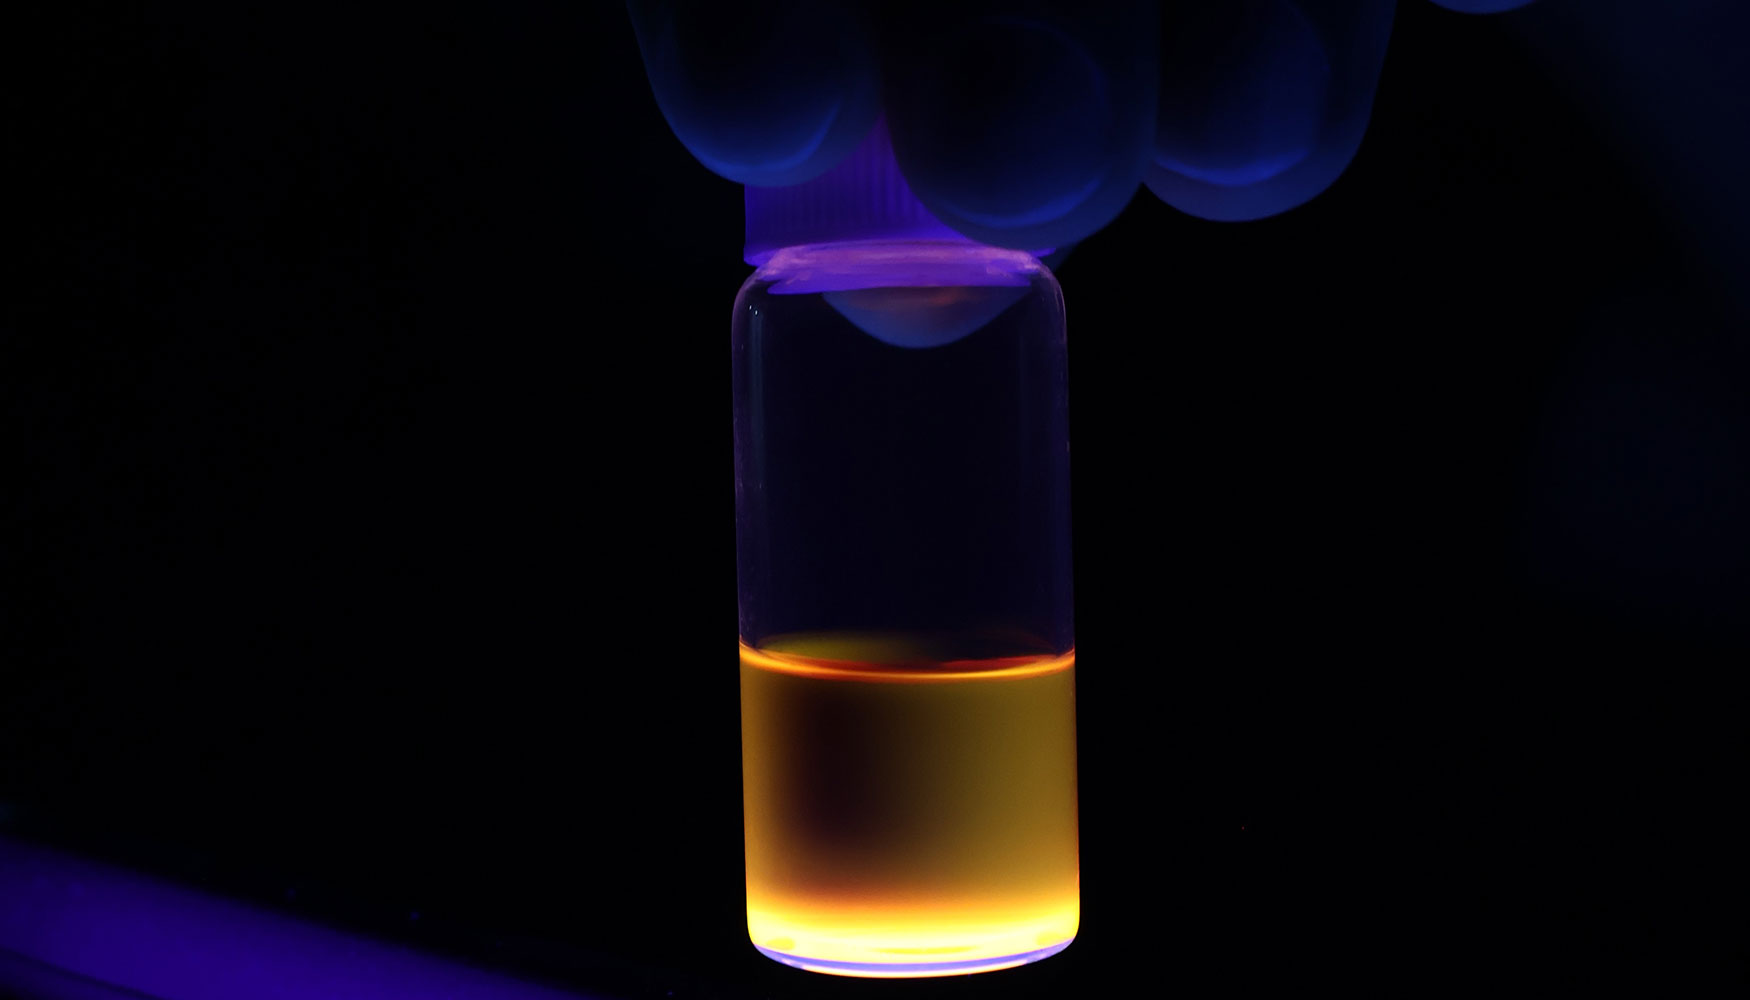 El nuevo material descubierto por CSIC iluminado con luz ultravioleta